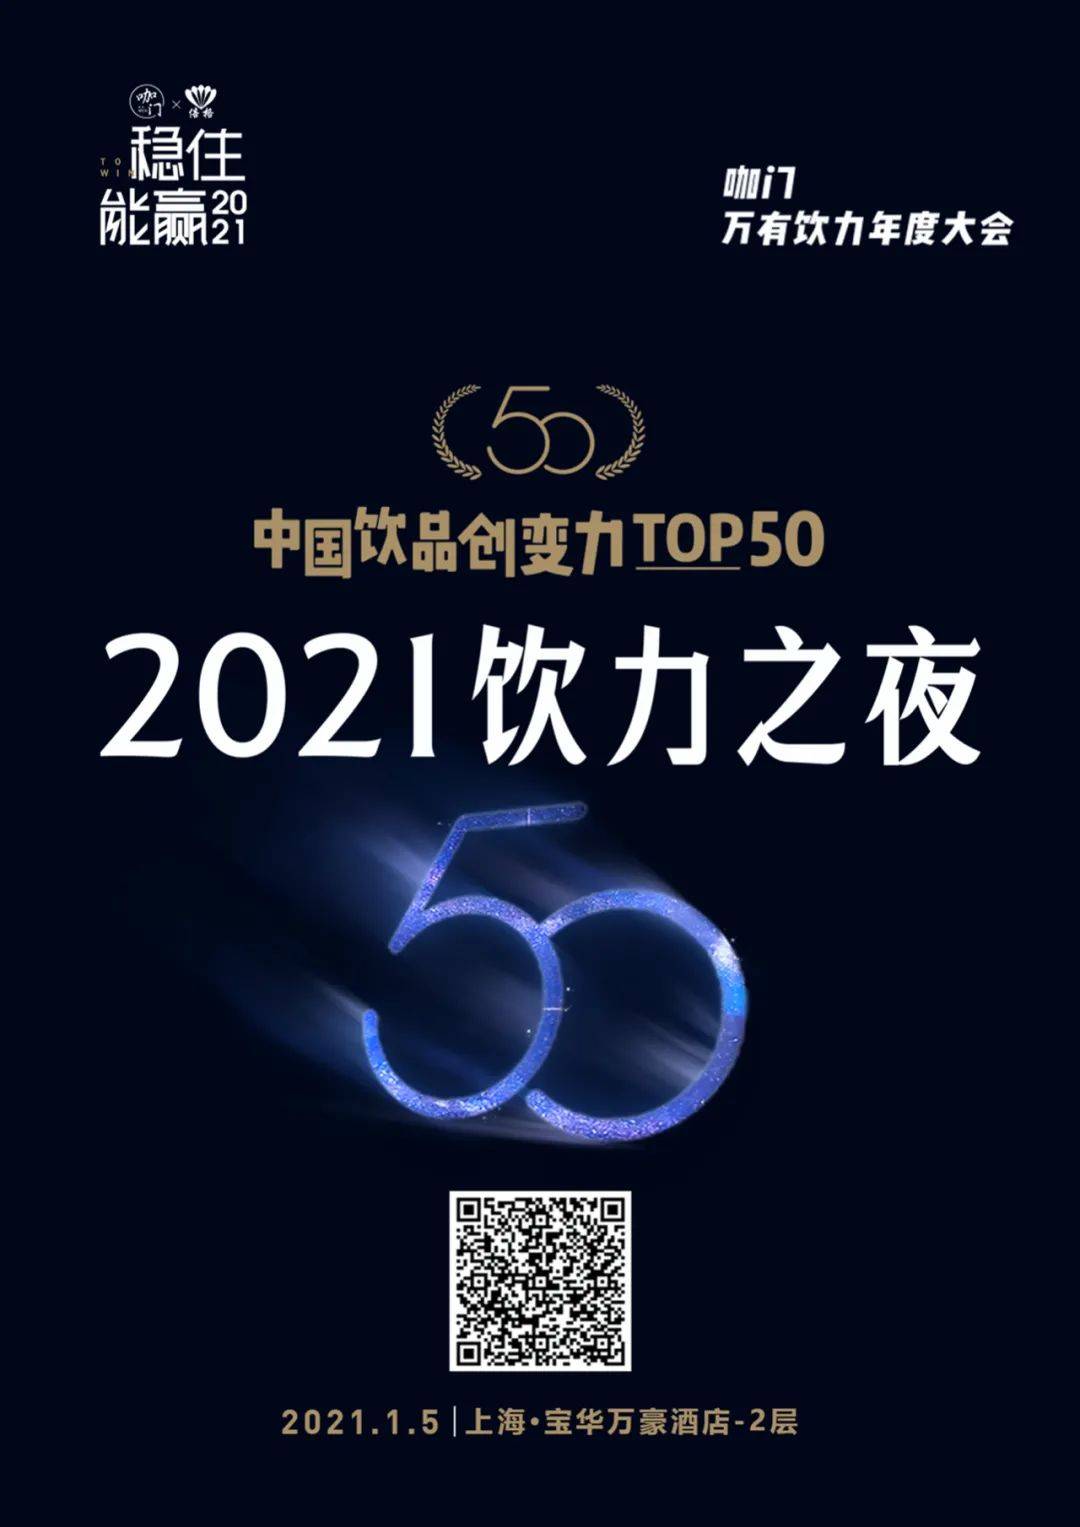 1月5日，上海，咖门2021万有饮力大会开启！